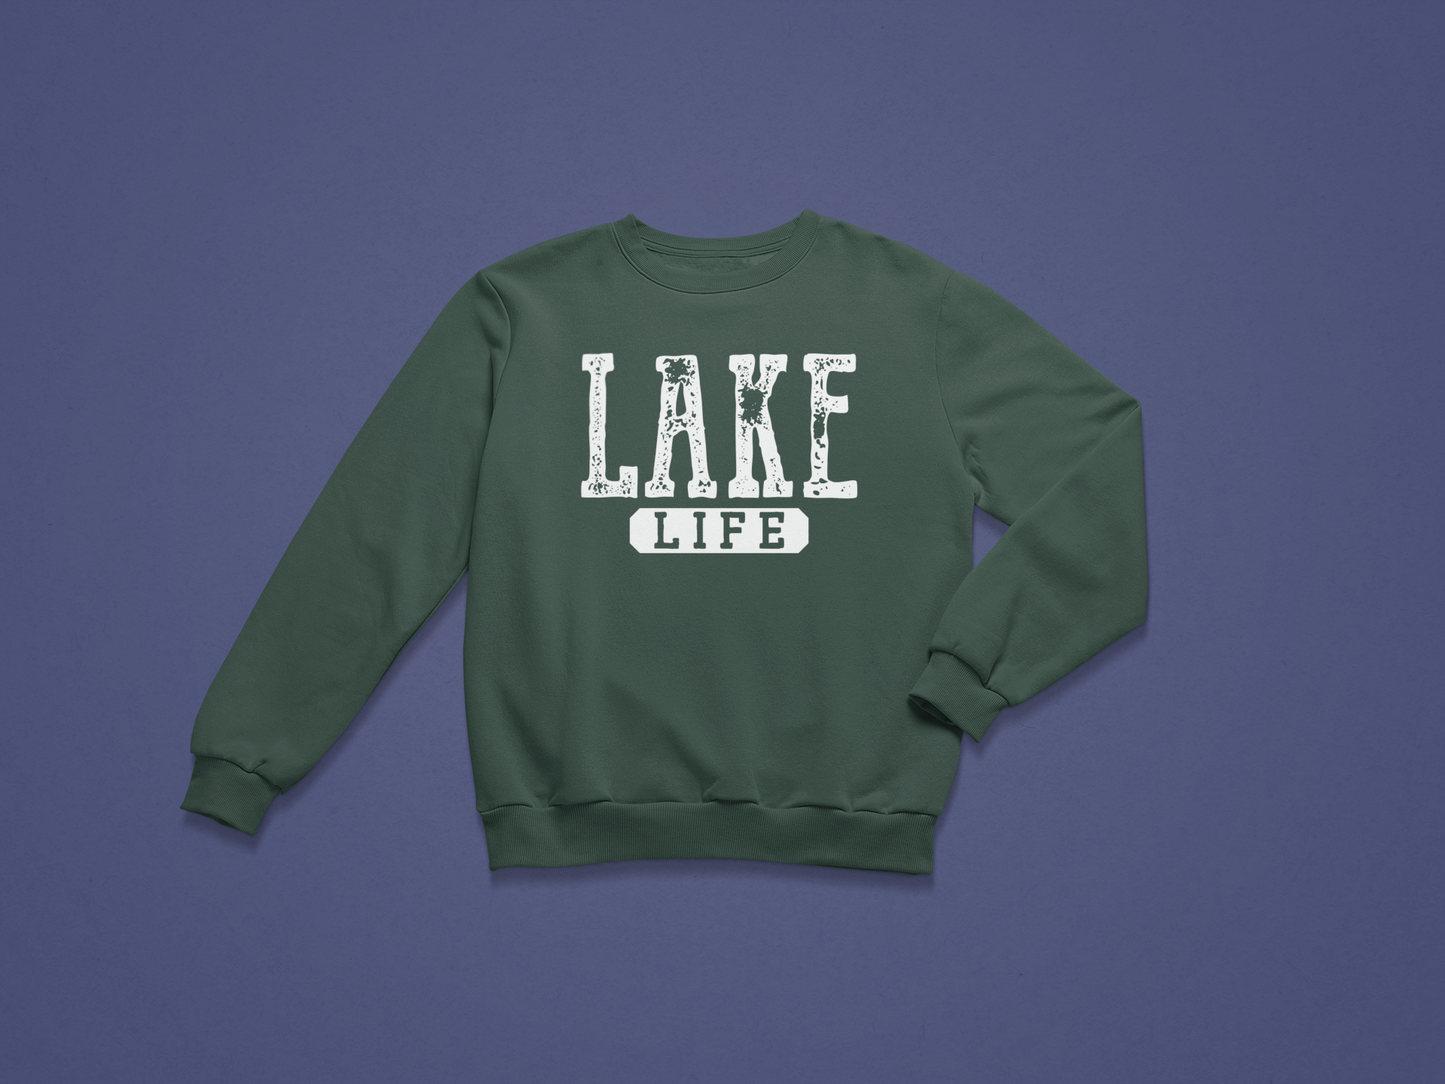 Lake Life Crewneck